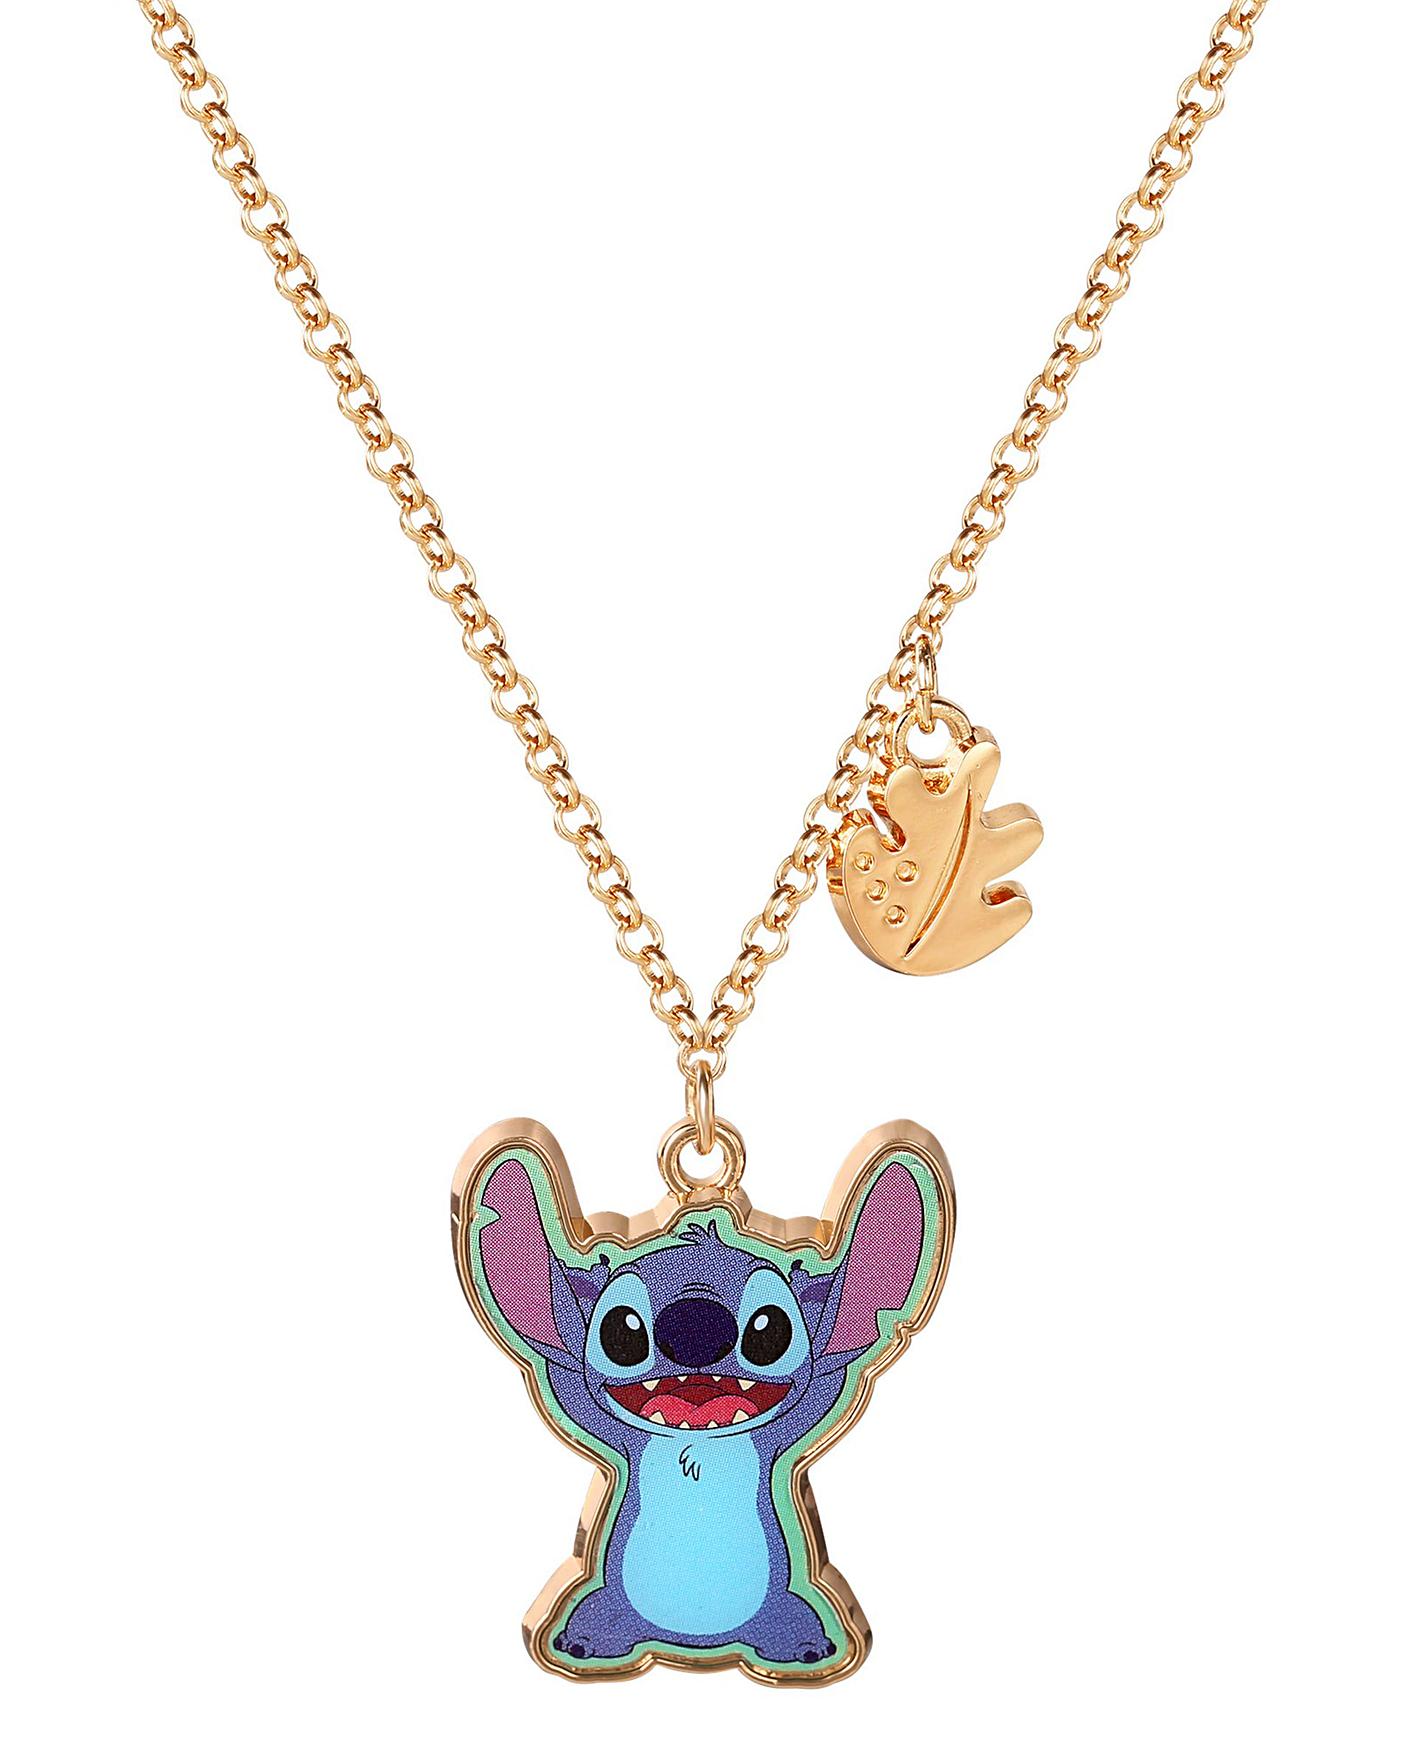 Disney Lilo and Stitch Necklace | eBay